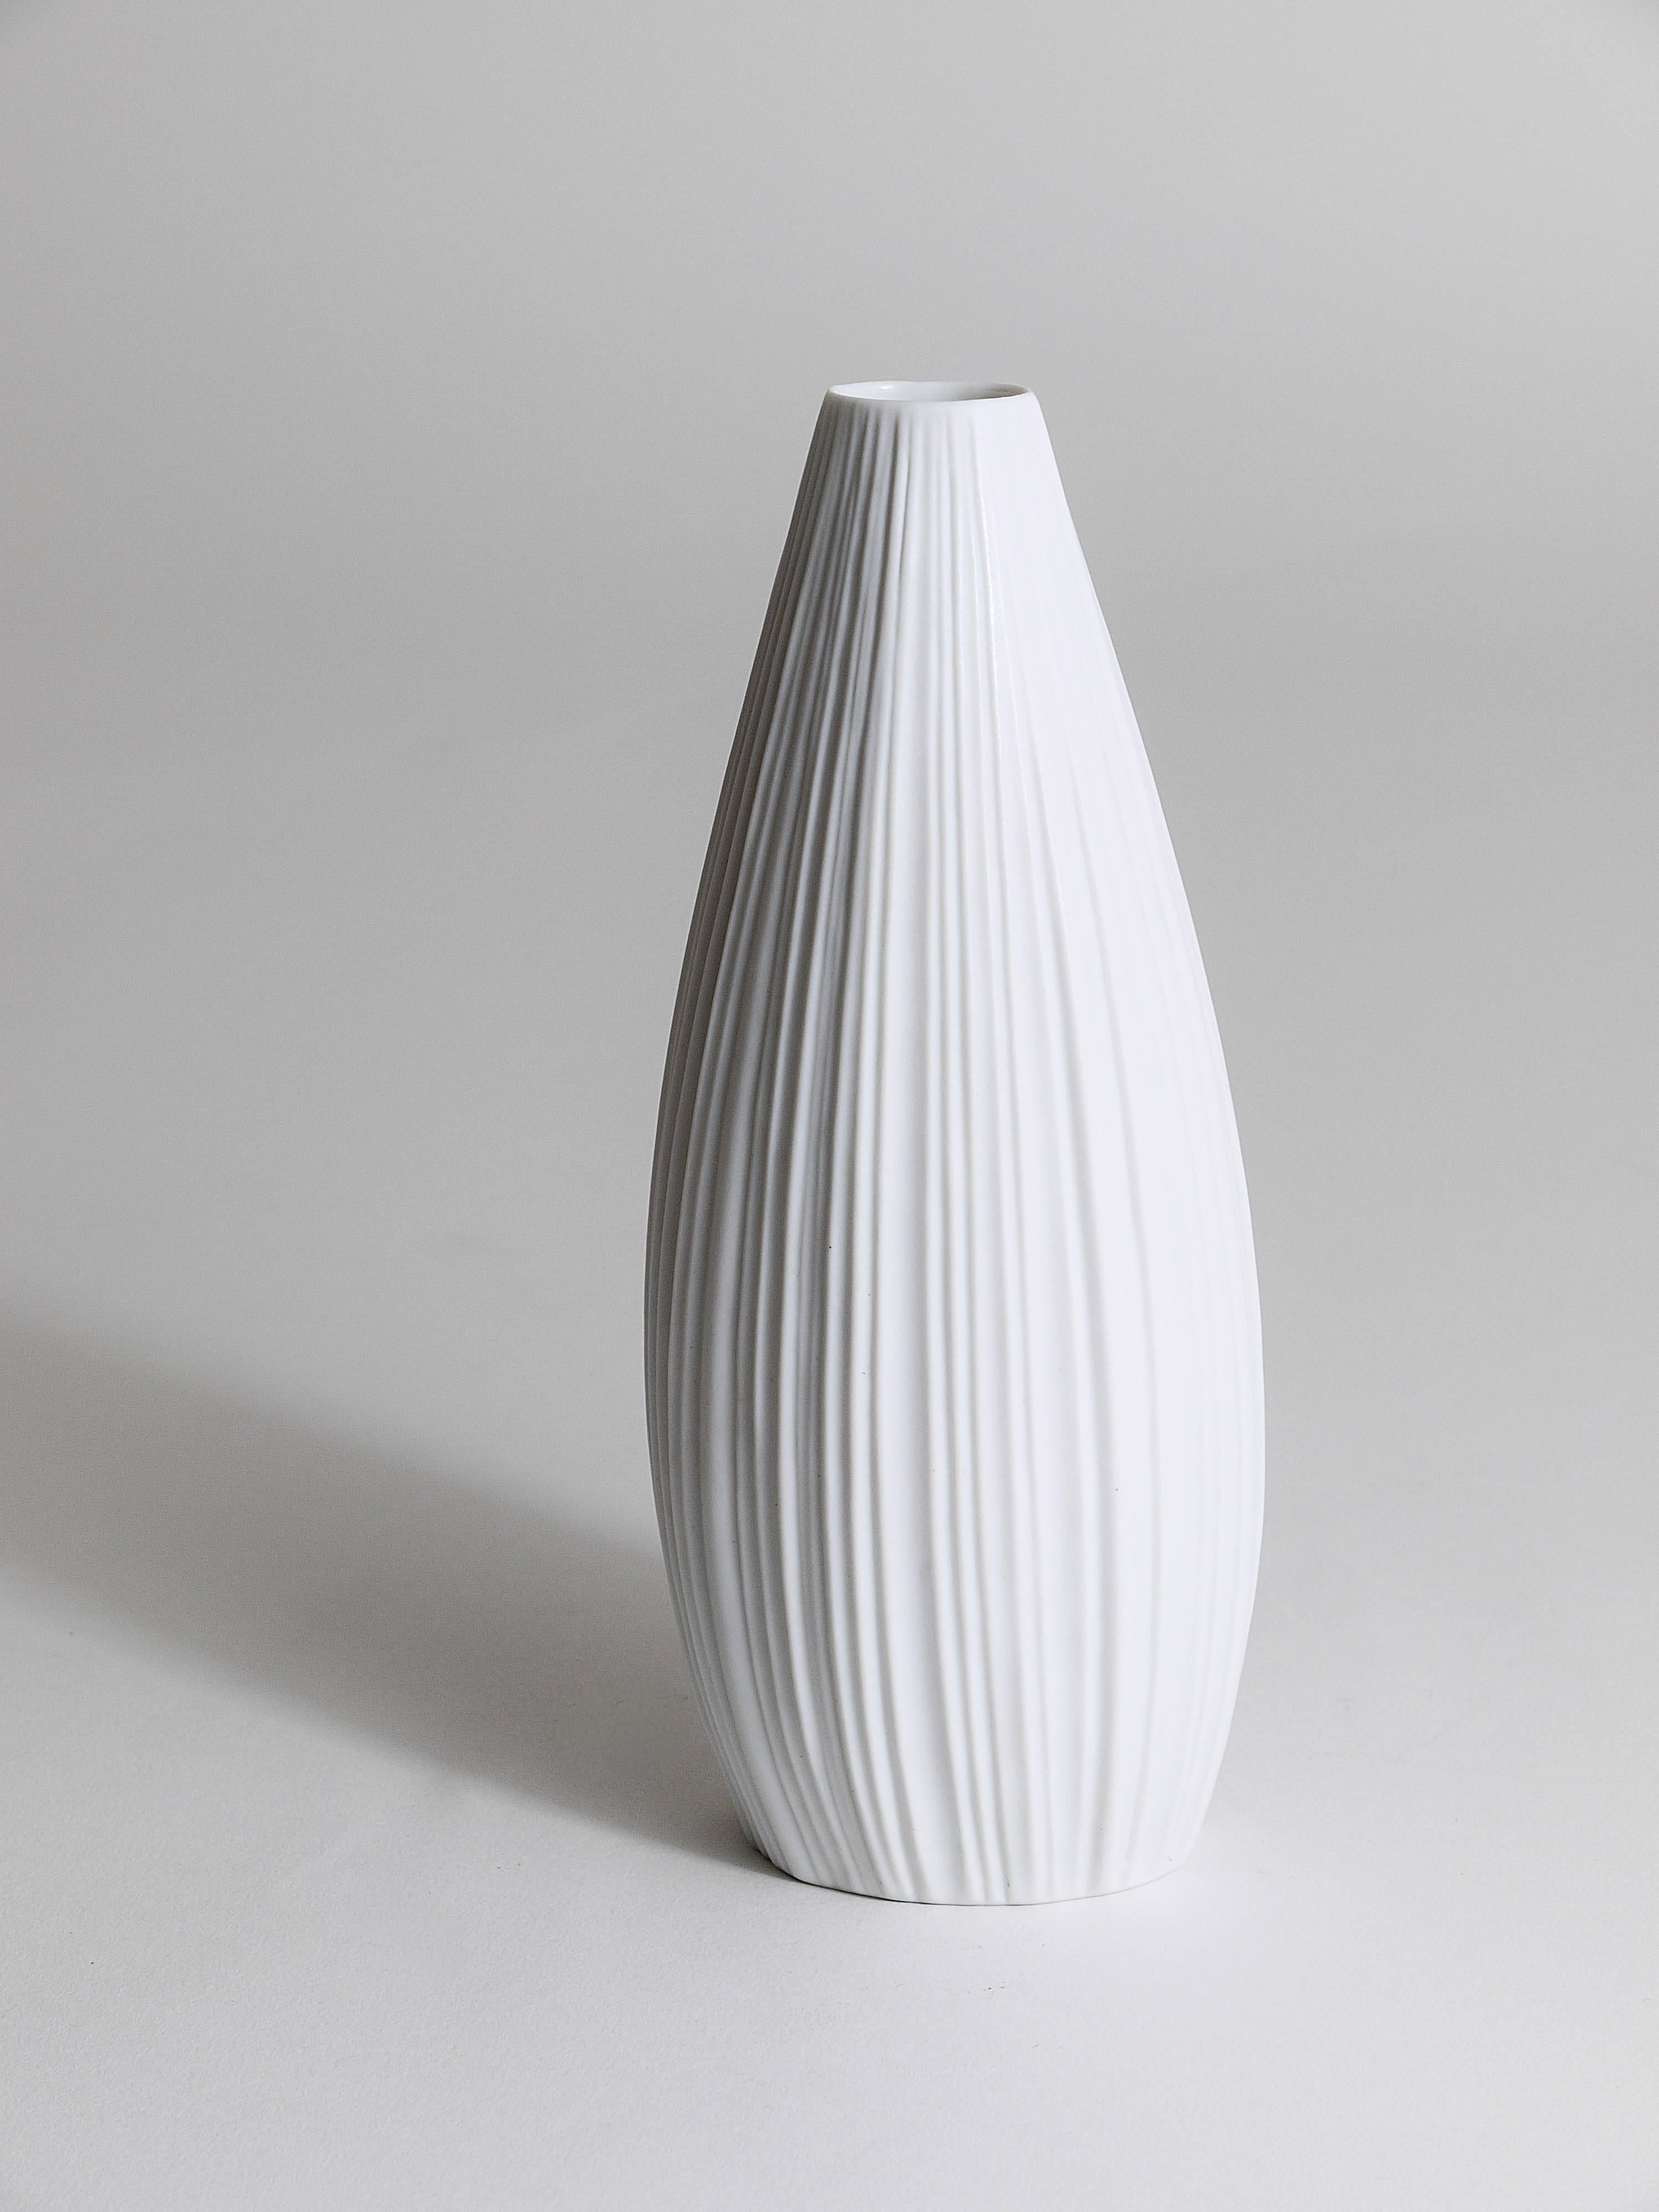 Un beau vase en porcelaine biscuit à relief rayé blanc mat des années 1960, conçu par Martin Freyer, exécuté par Rosenthal, Allemagne. En très bon état.